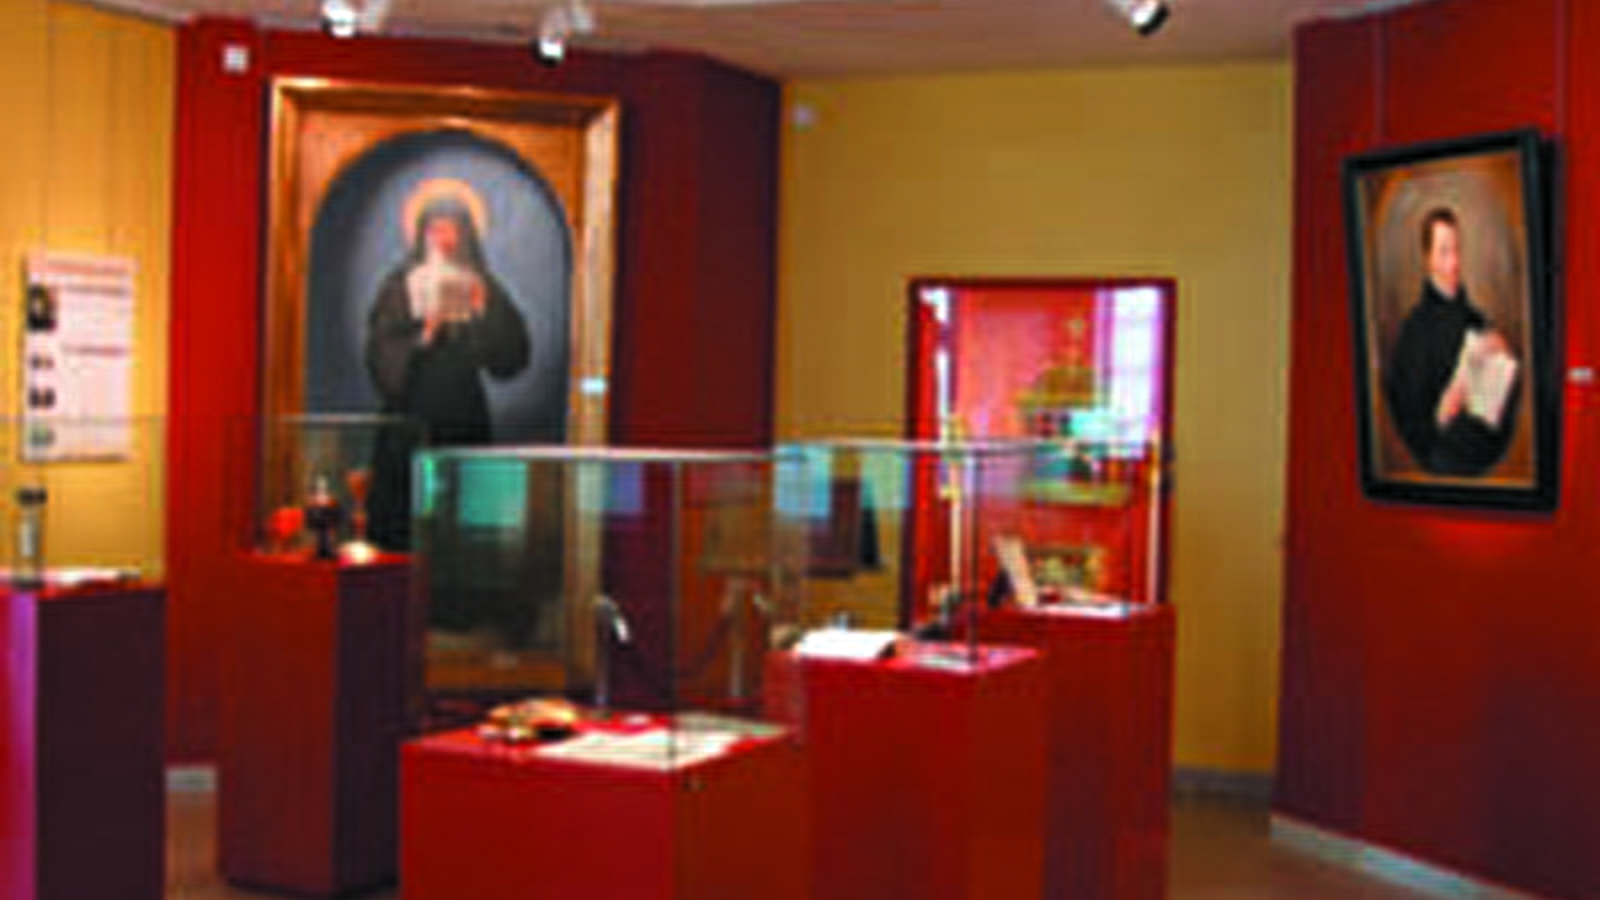 Accueil des Pélerins - Exposition permanente sainte Marguerite-Marie et saint Claude La Colombière